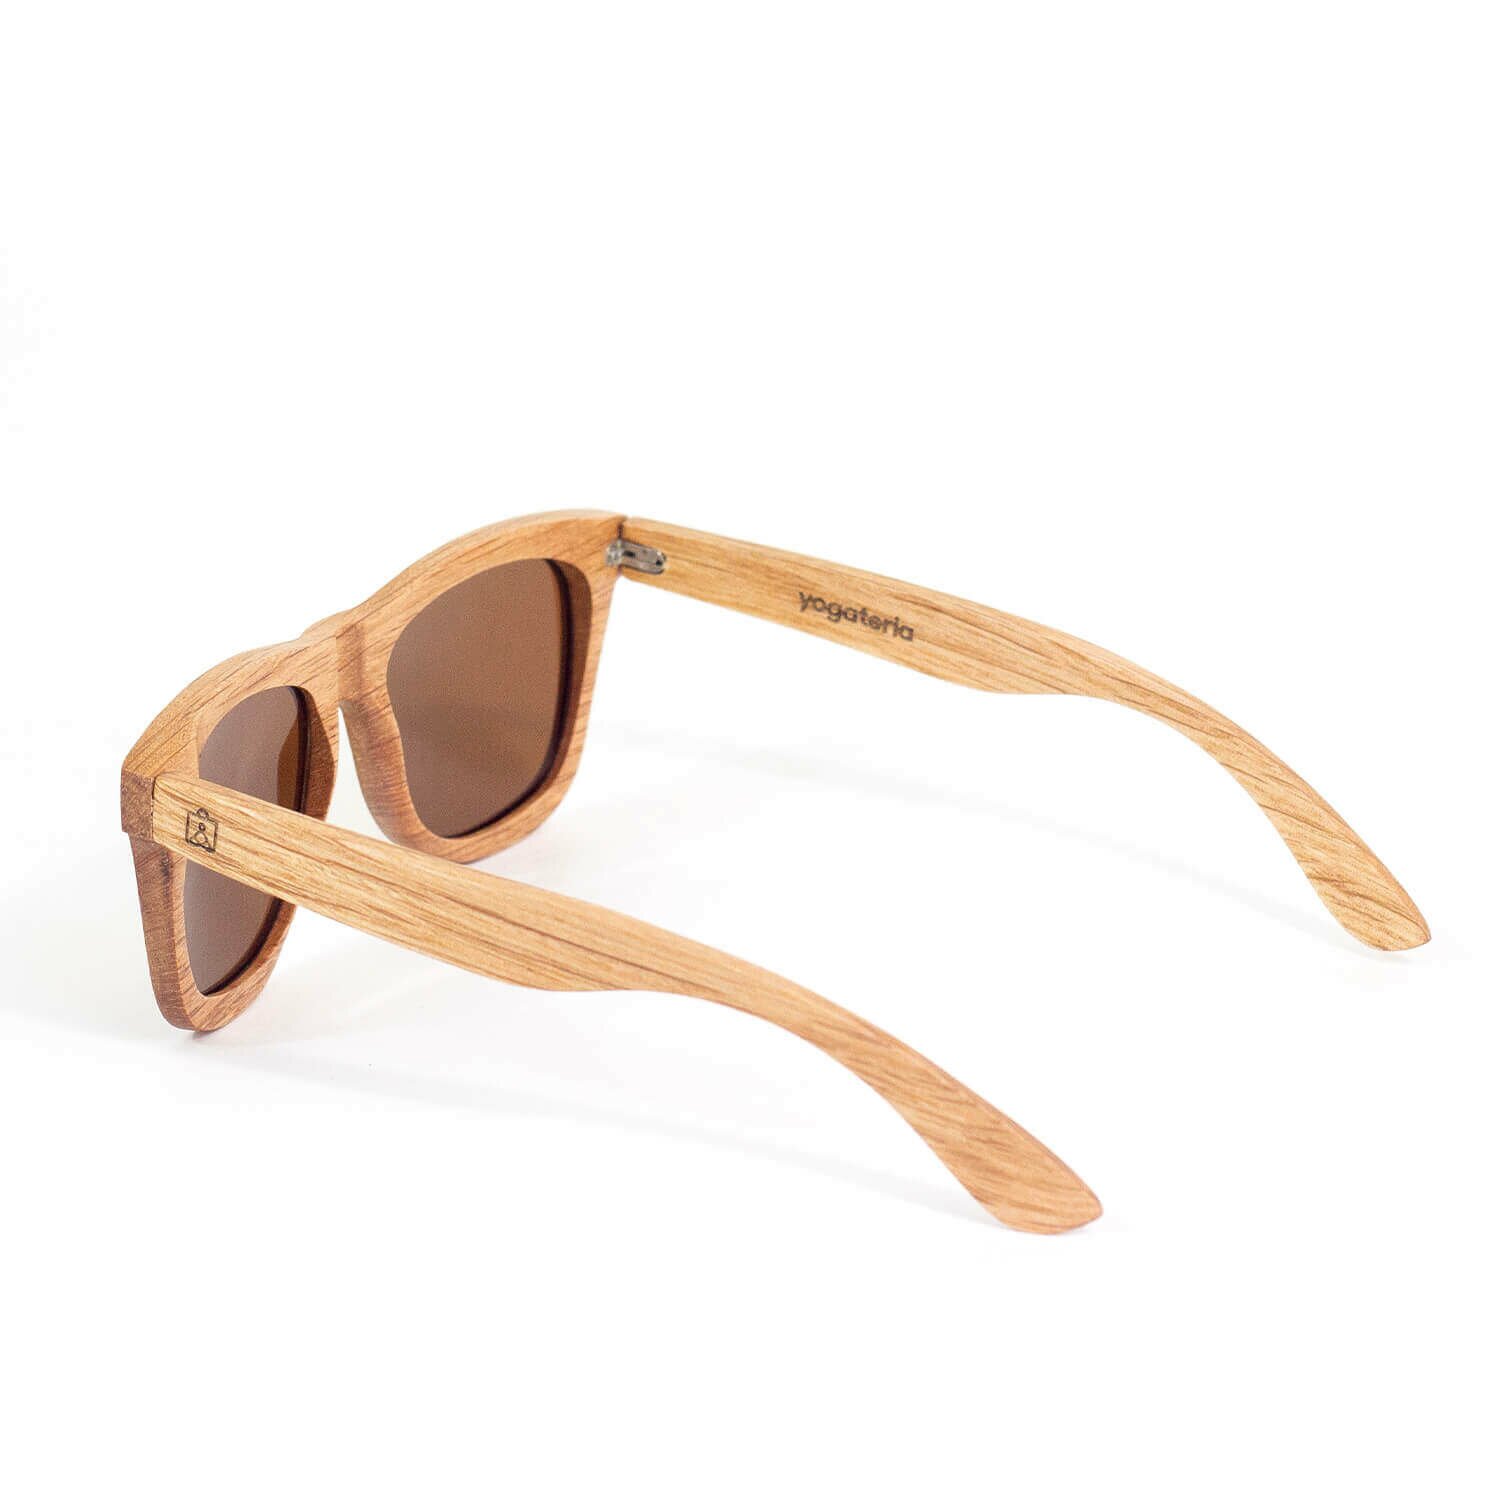 oculos-madeira-yogateria-noronha-3